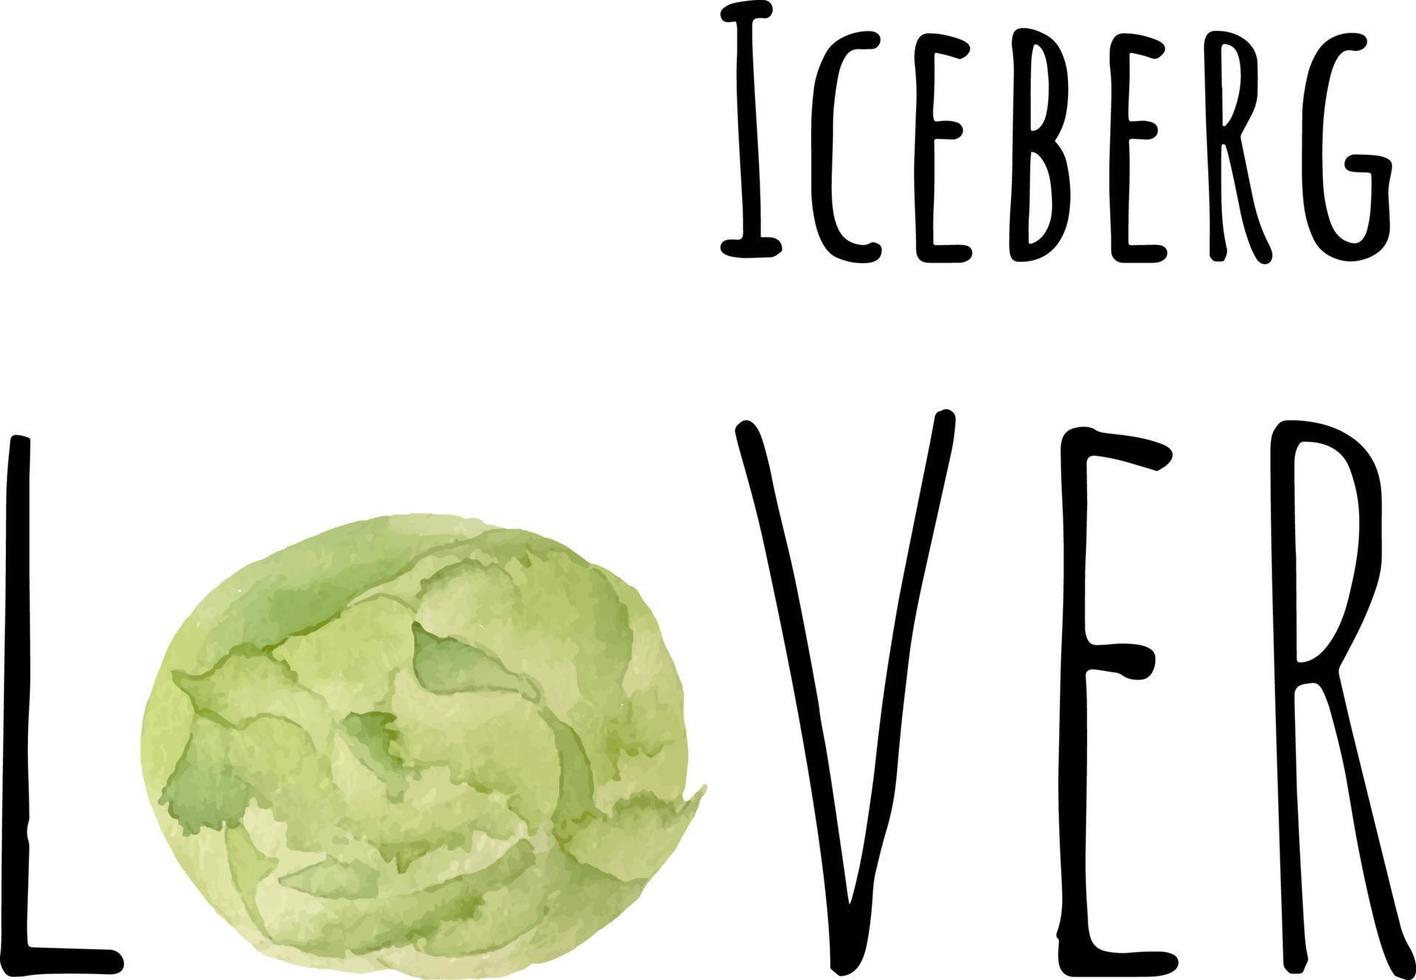 aquarelle illustration de vert iceberg. Frais brut des légumes. iceberg amoureux illustration vecteur